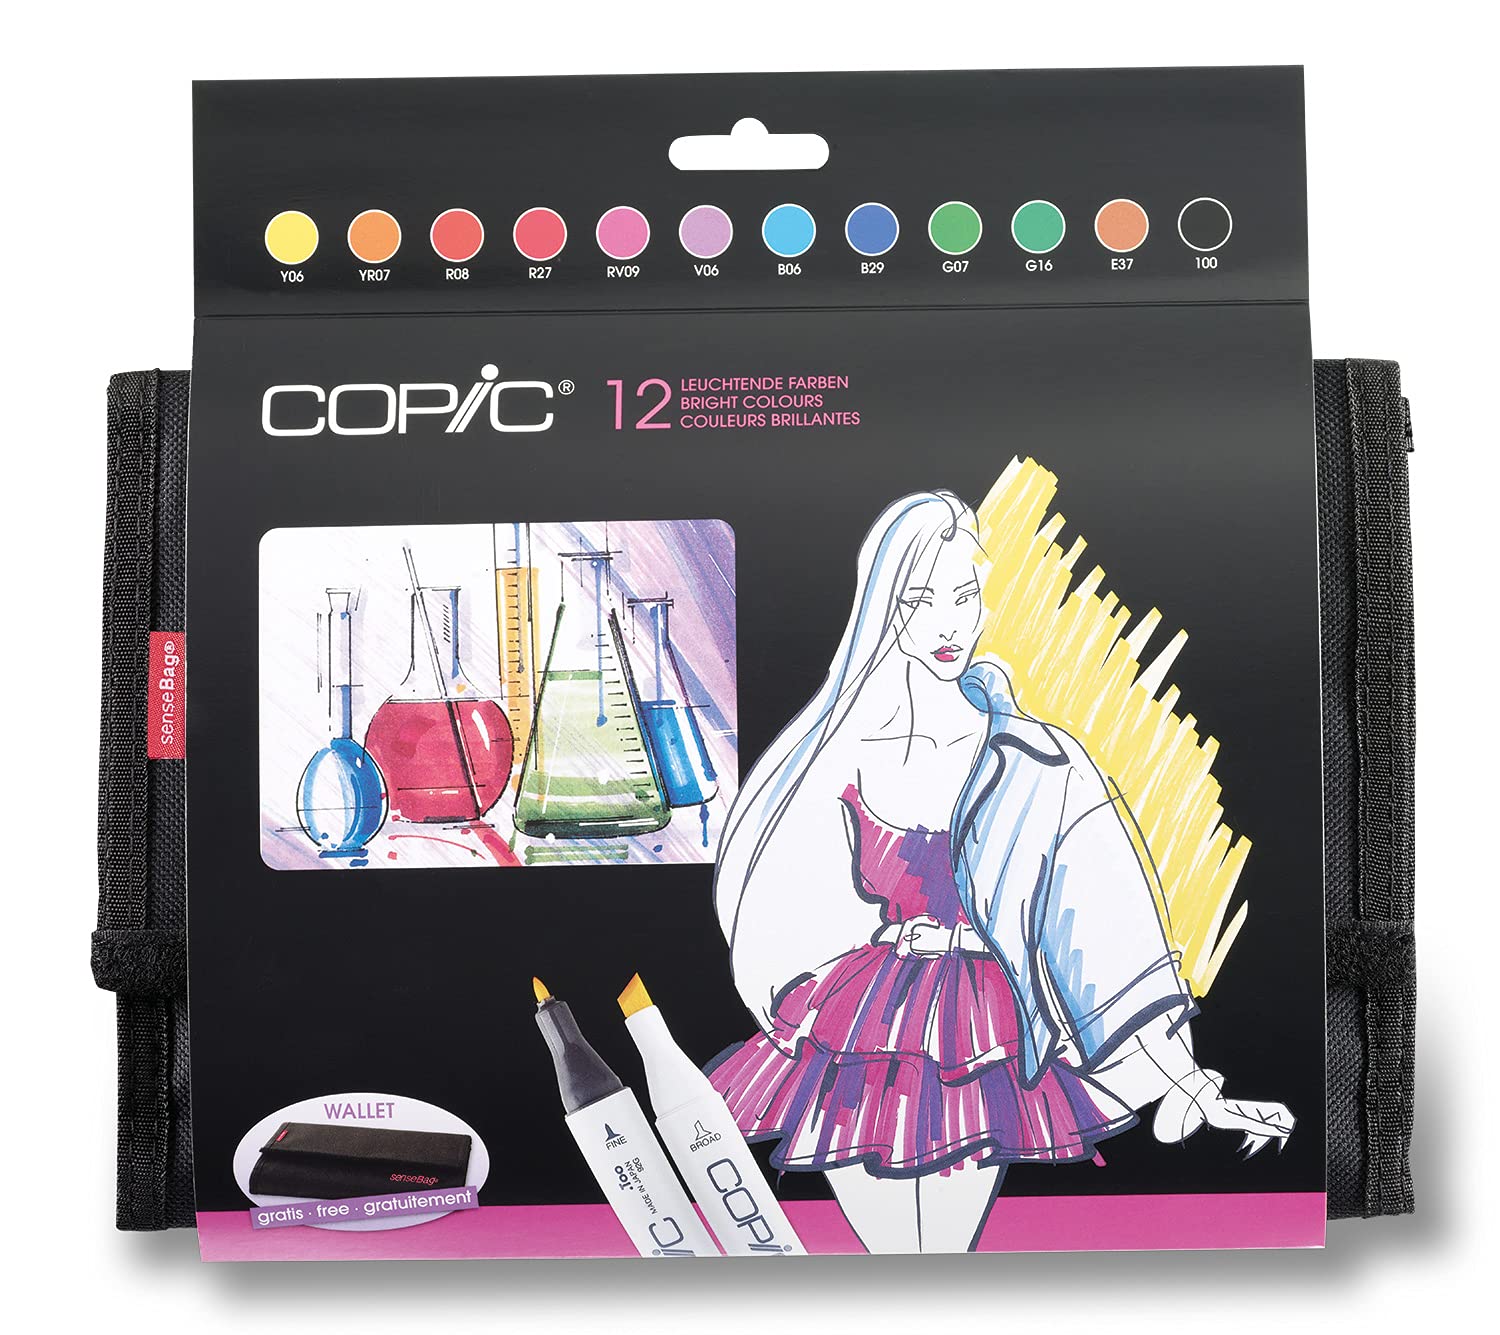 COPIC Classic Marker 12er Set "Leuchtende Farben" im Wallet, professionellee Layoutmarker mit einer mittelbreiten und einer feinen Spitze